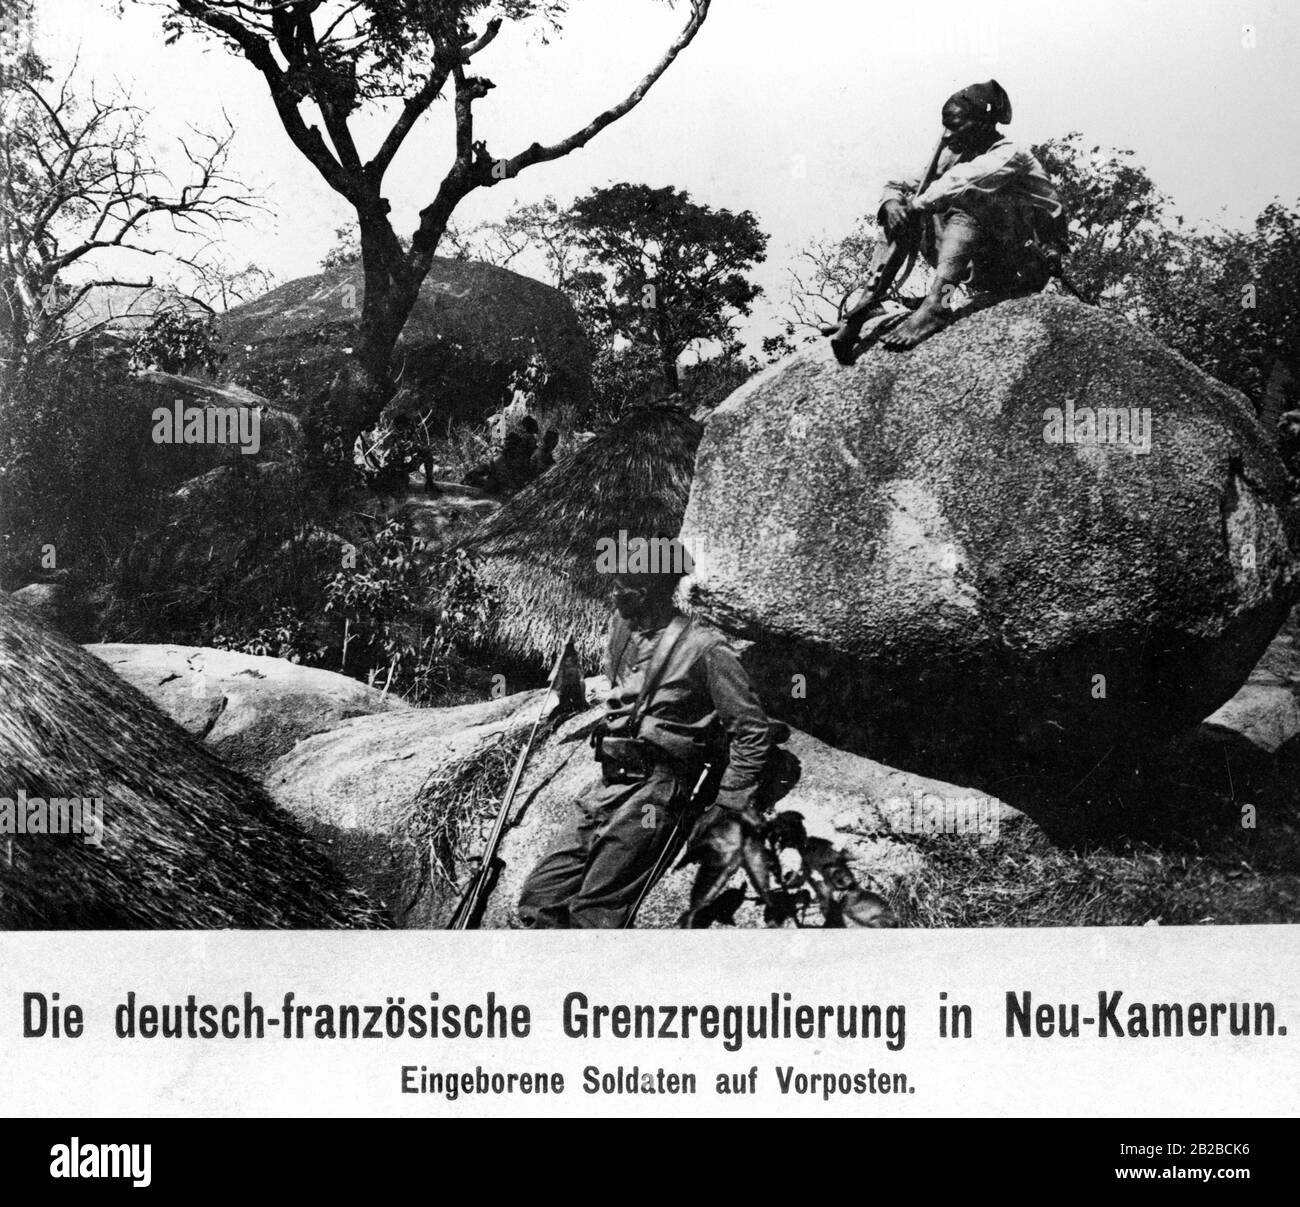 Einheimische Soldaten an einem Außenposten zur Grenzregulierung in Neukamerun, dem neuen Gebiet der deutschen Kolonie, die ursprünglich zum Kongo gehörte. Stockfoto